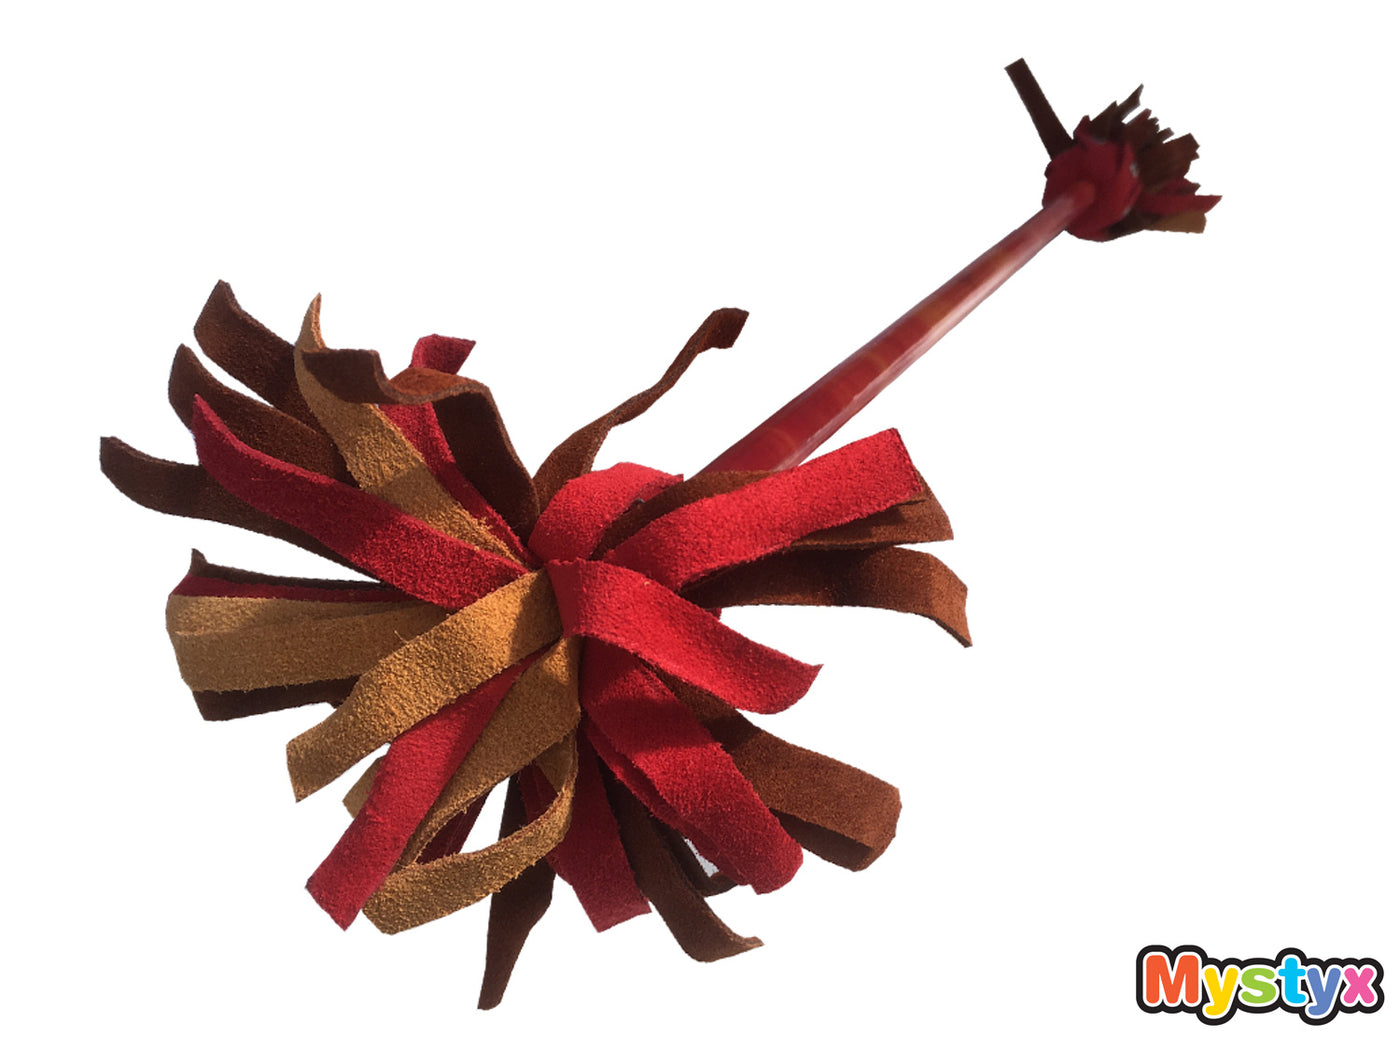 MyKidStyx bâton du diable / bâton fleur (3 à 7 ans) en silicone et cuir - Motif Murmures jaune et rouge - Kit complet